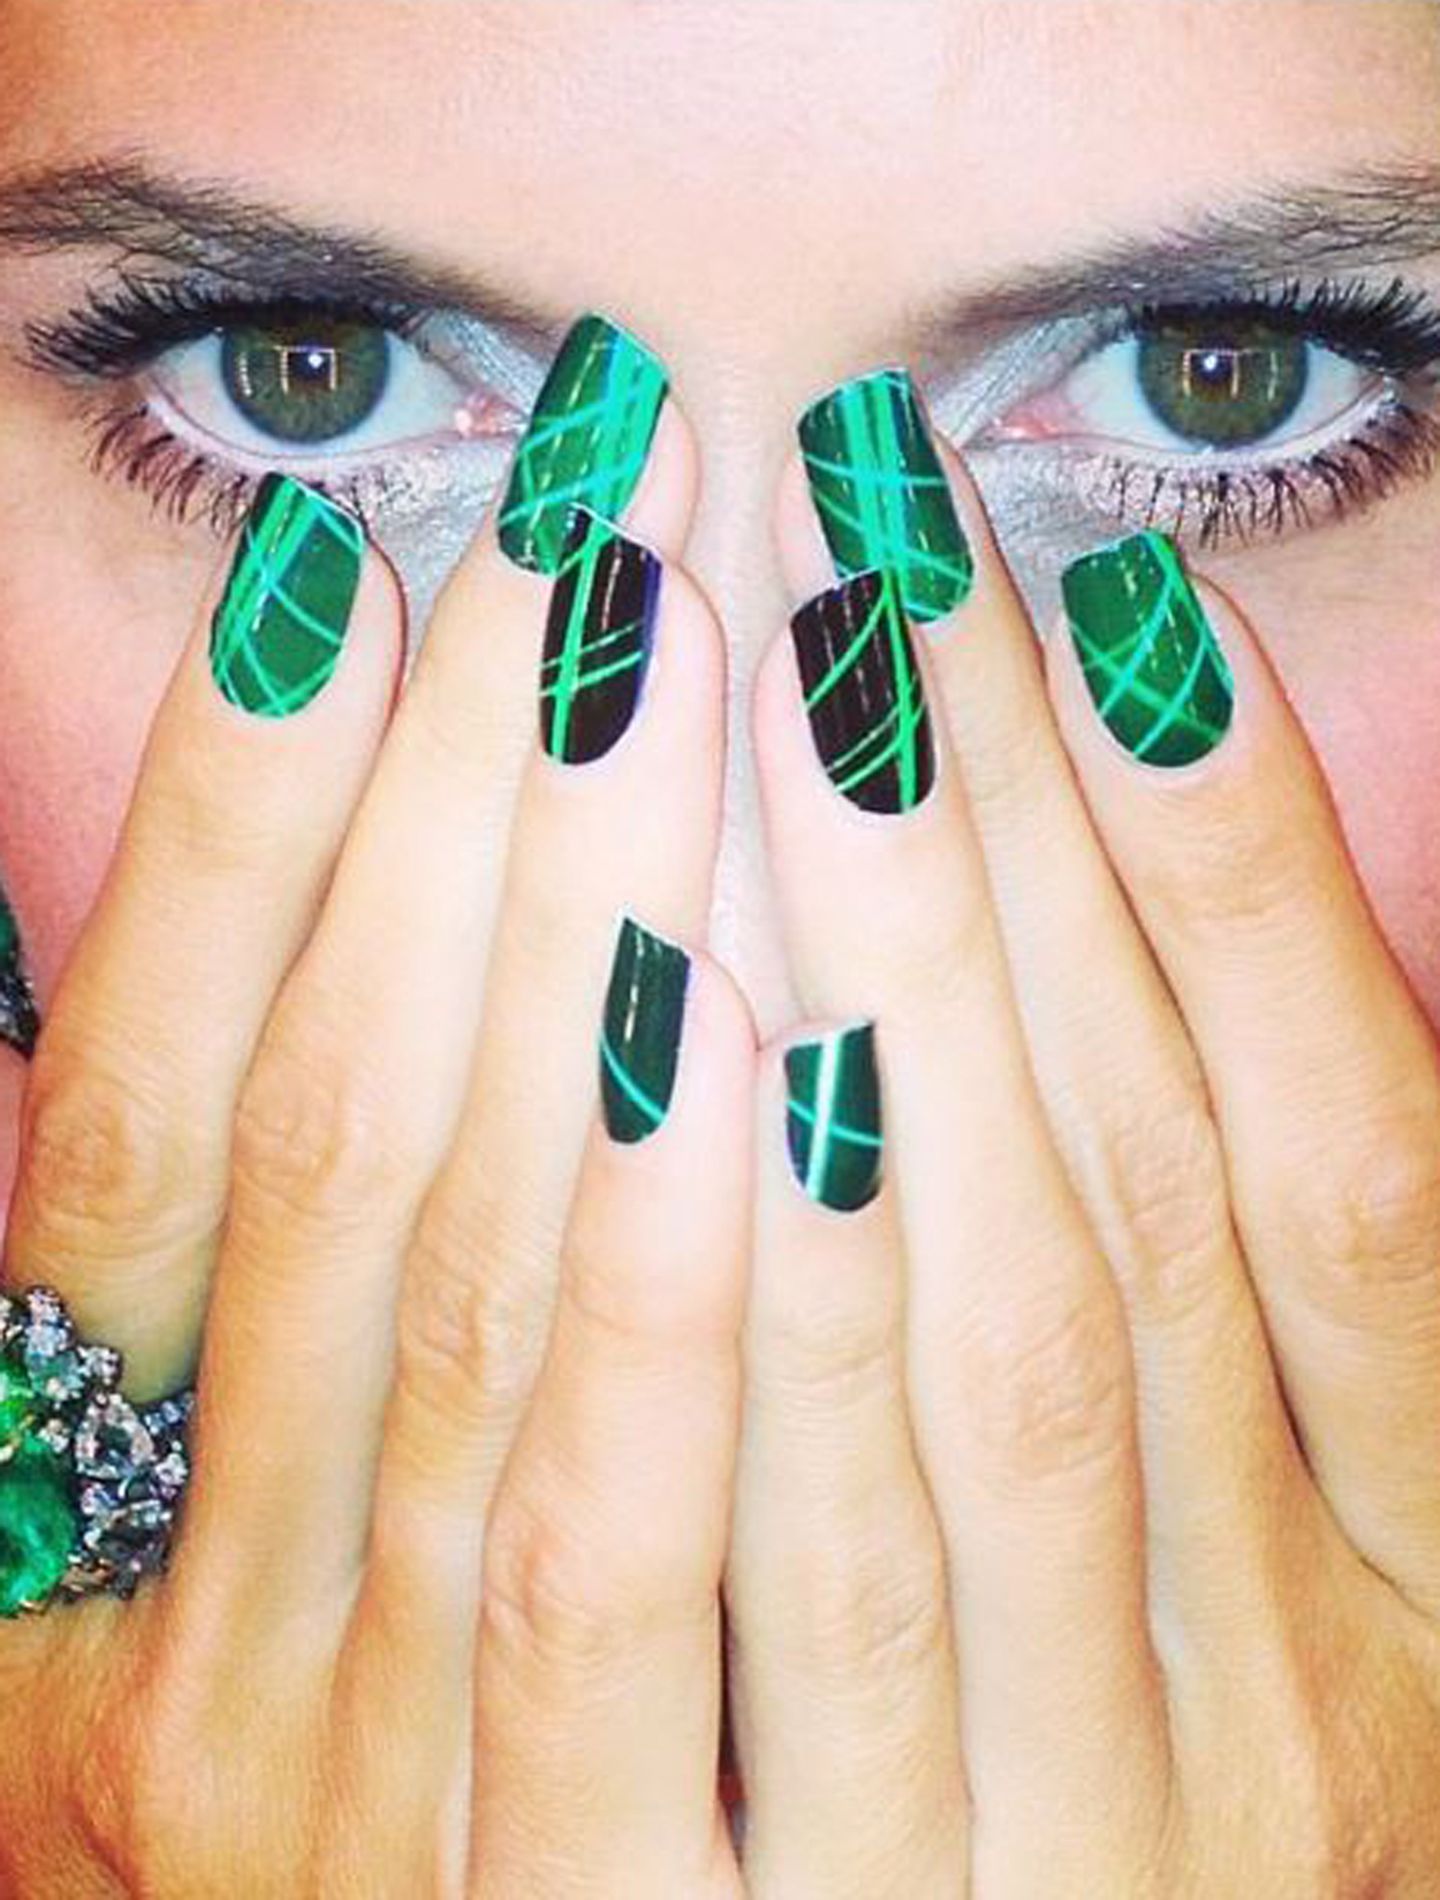 Einfach magisch sind Heidi Klums grüne Pop-Art-Nägel, die sie dramatisch inszeniert.